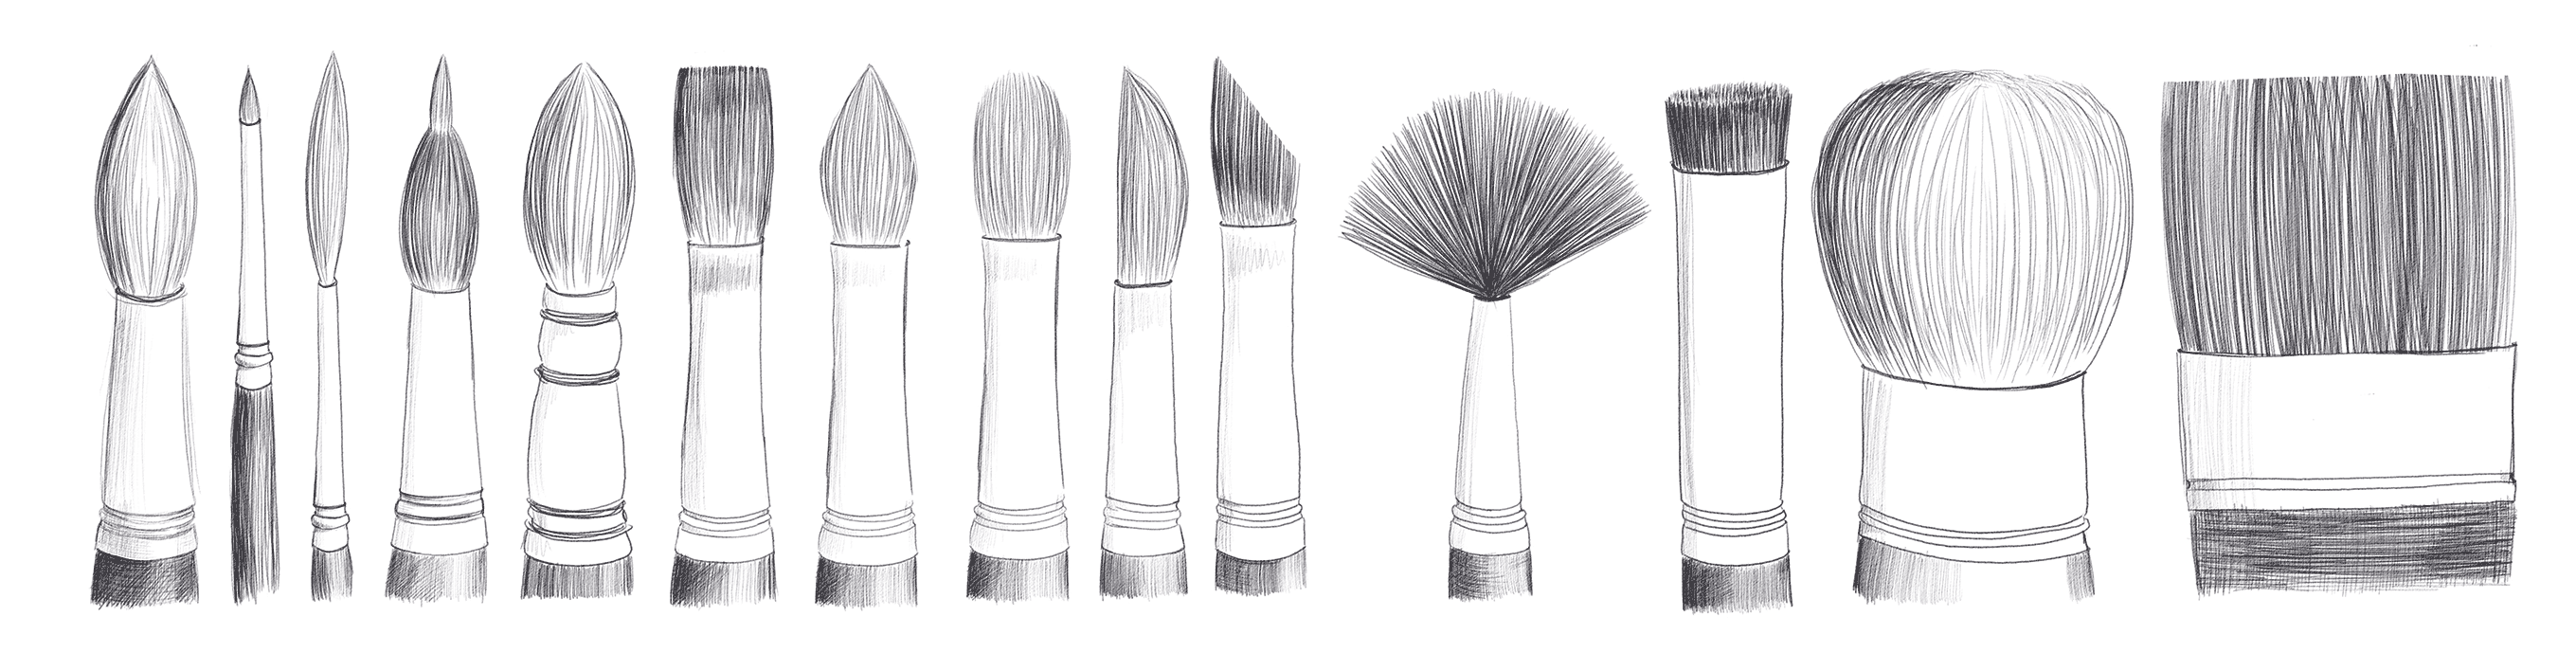 Pinsel gibt es in vielen Formen je nach dem gewünschten Einsatzbereich im Malen. Illustration: Anna Moser